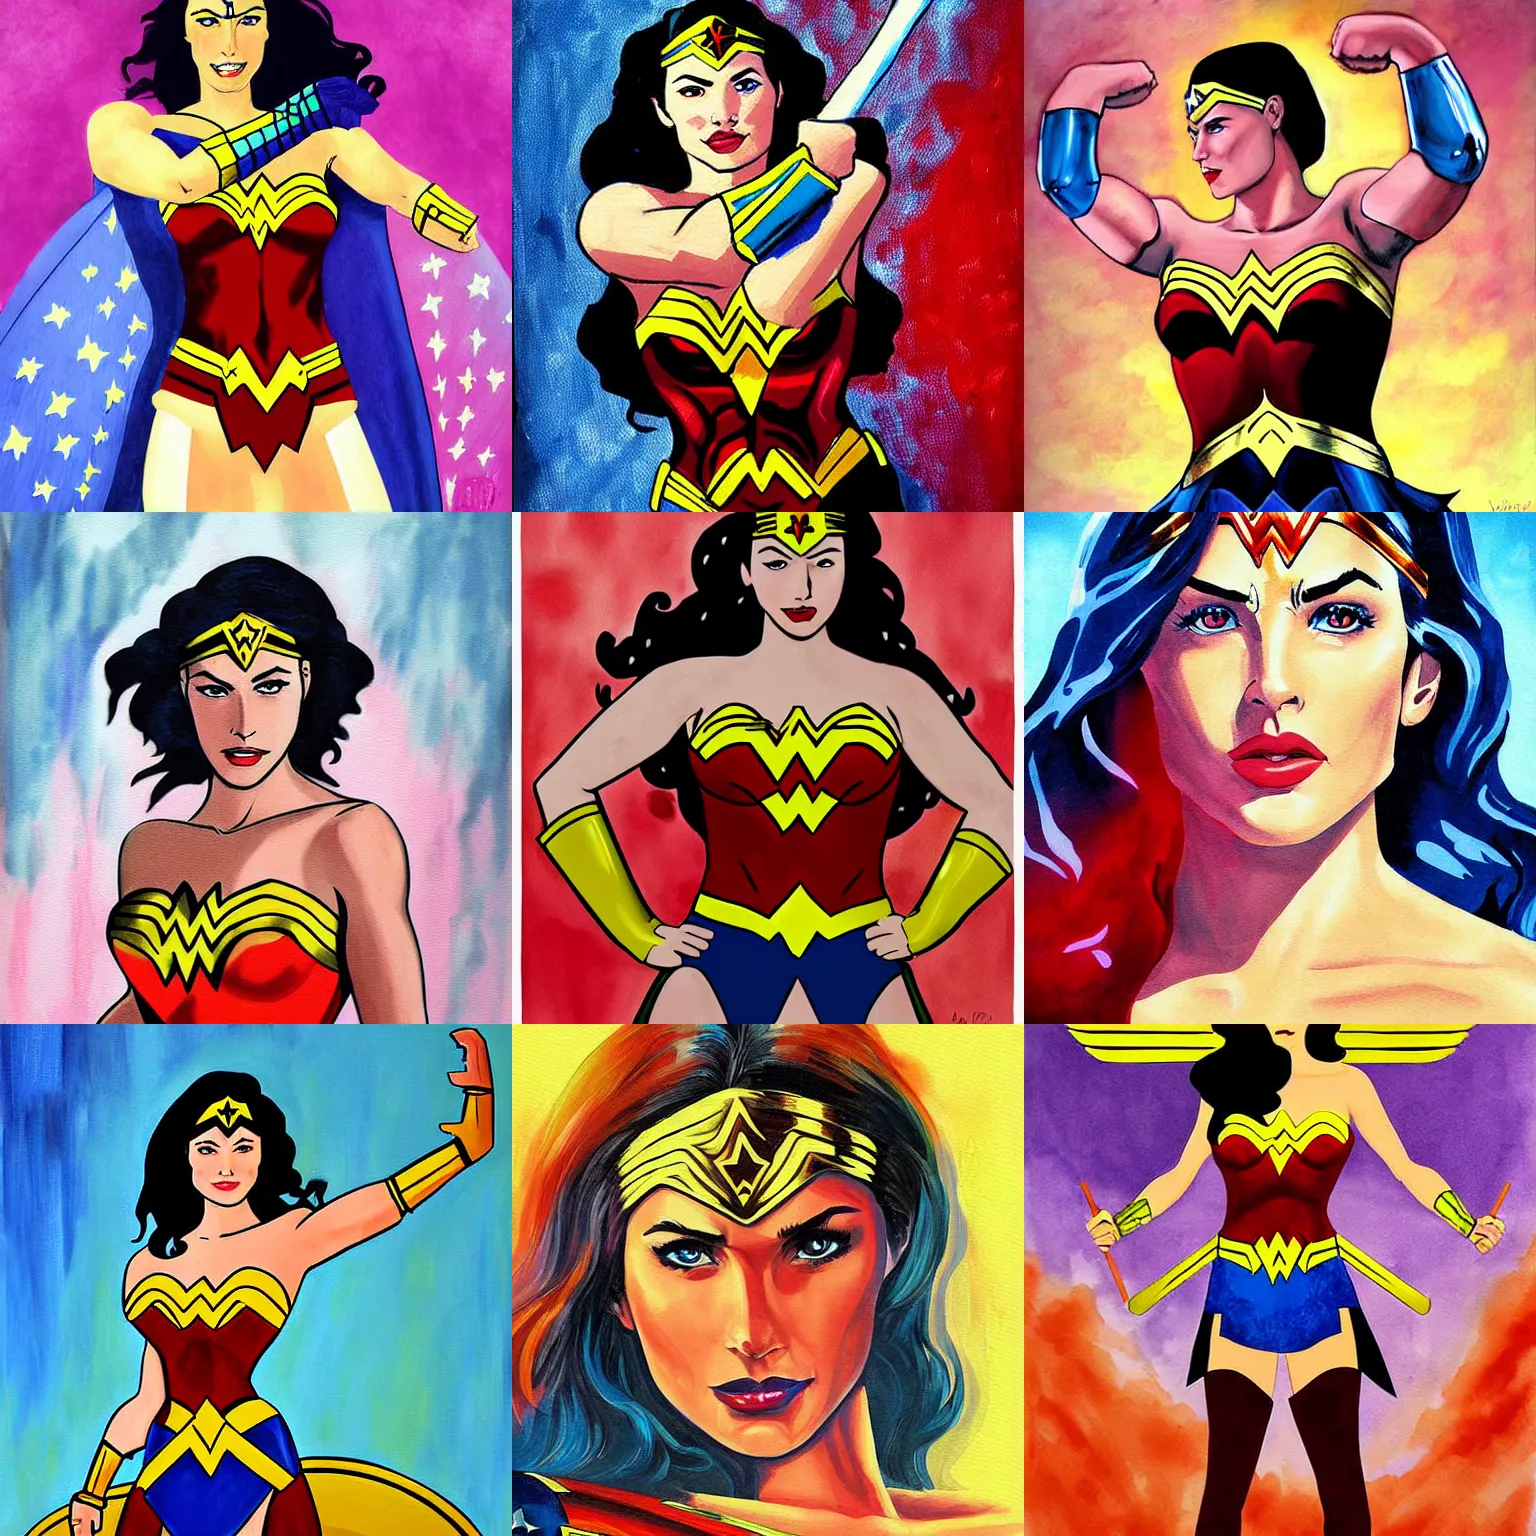 Prompt: Wonder Woman painting by Vargas